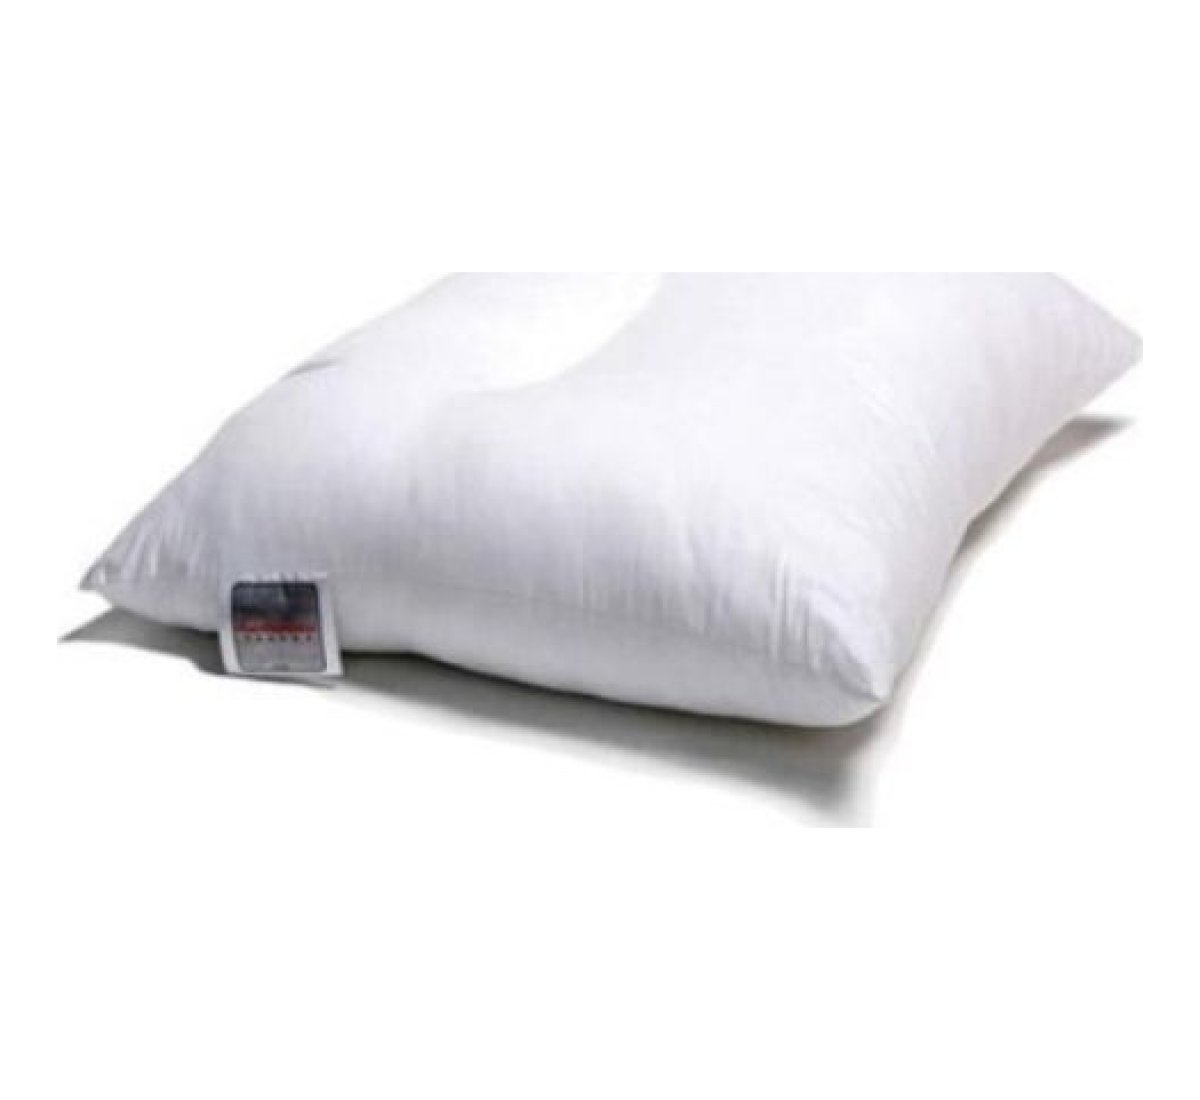 Konbanwa pillow - Therapeutisch Hoofdkussen